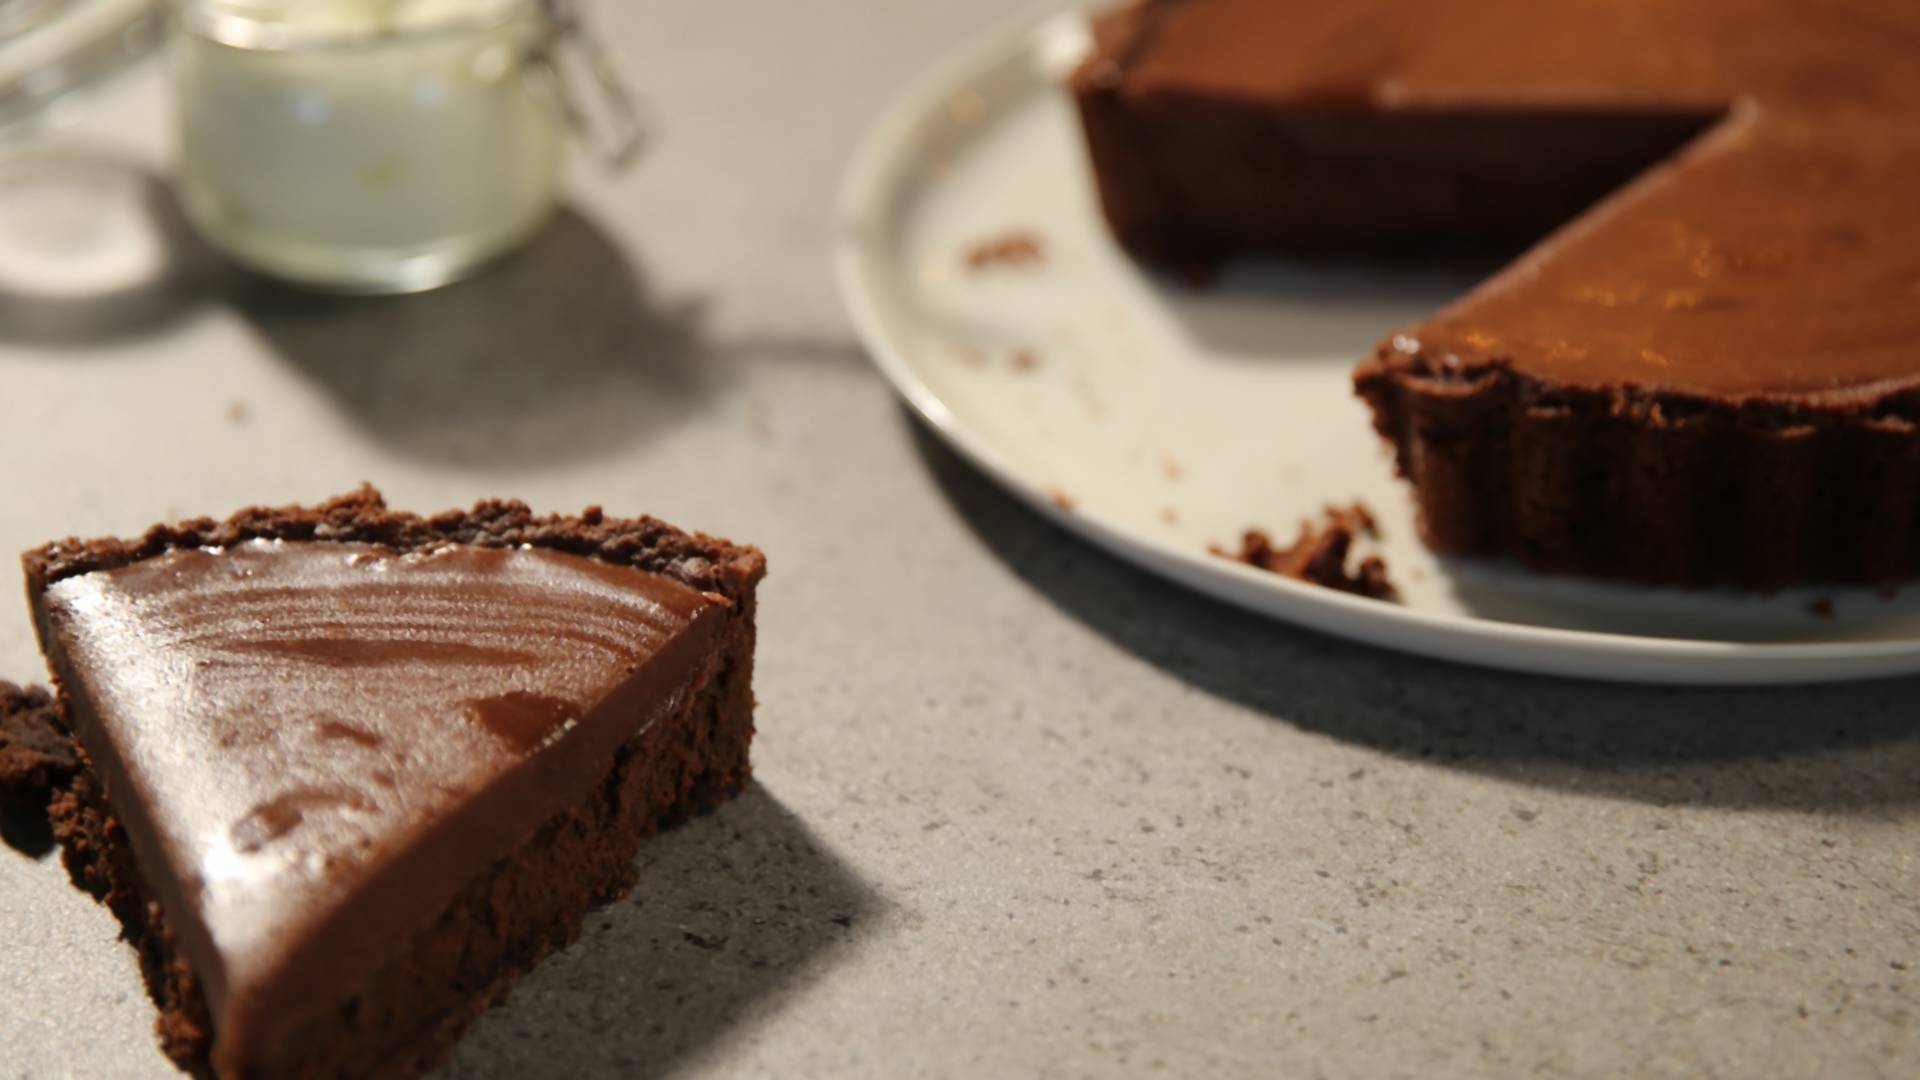 Ako volite čokoladu onda morate da probate ovu "blatnjavu" pitu